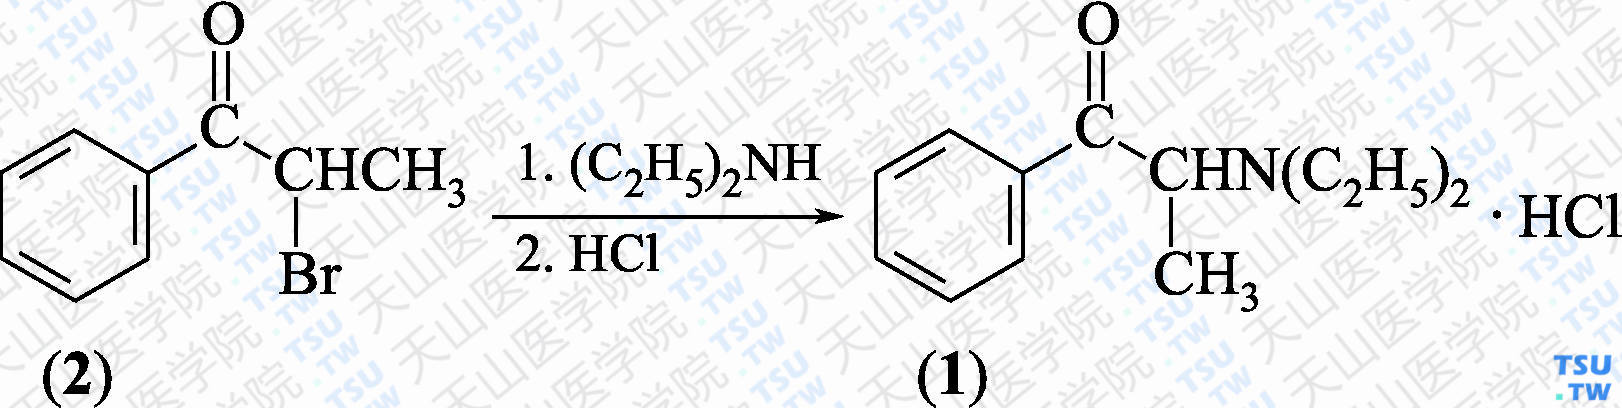 盐酸安非拉酮（分子式：C<sub>13</sub>H<sub>19</sub>NO）的合成方法路线及其结构式